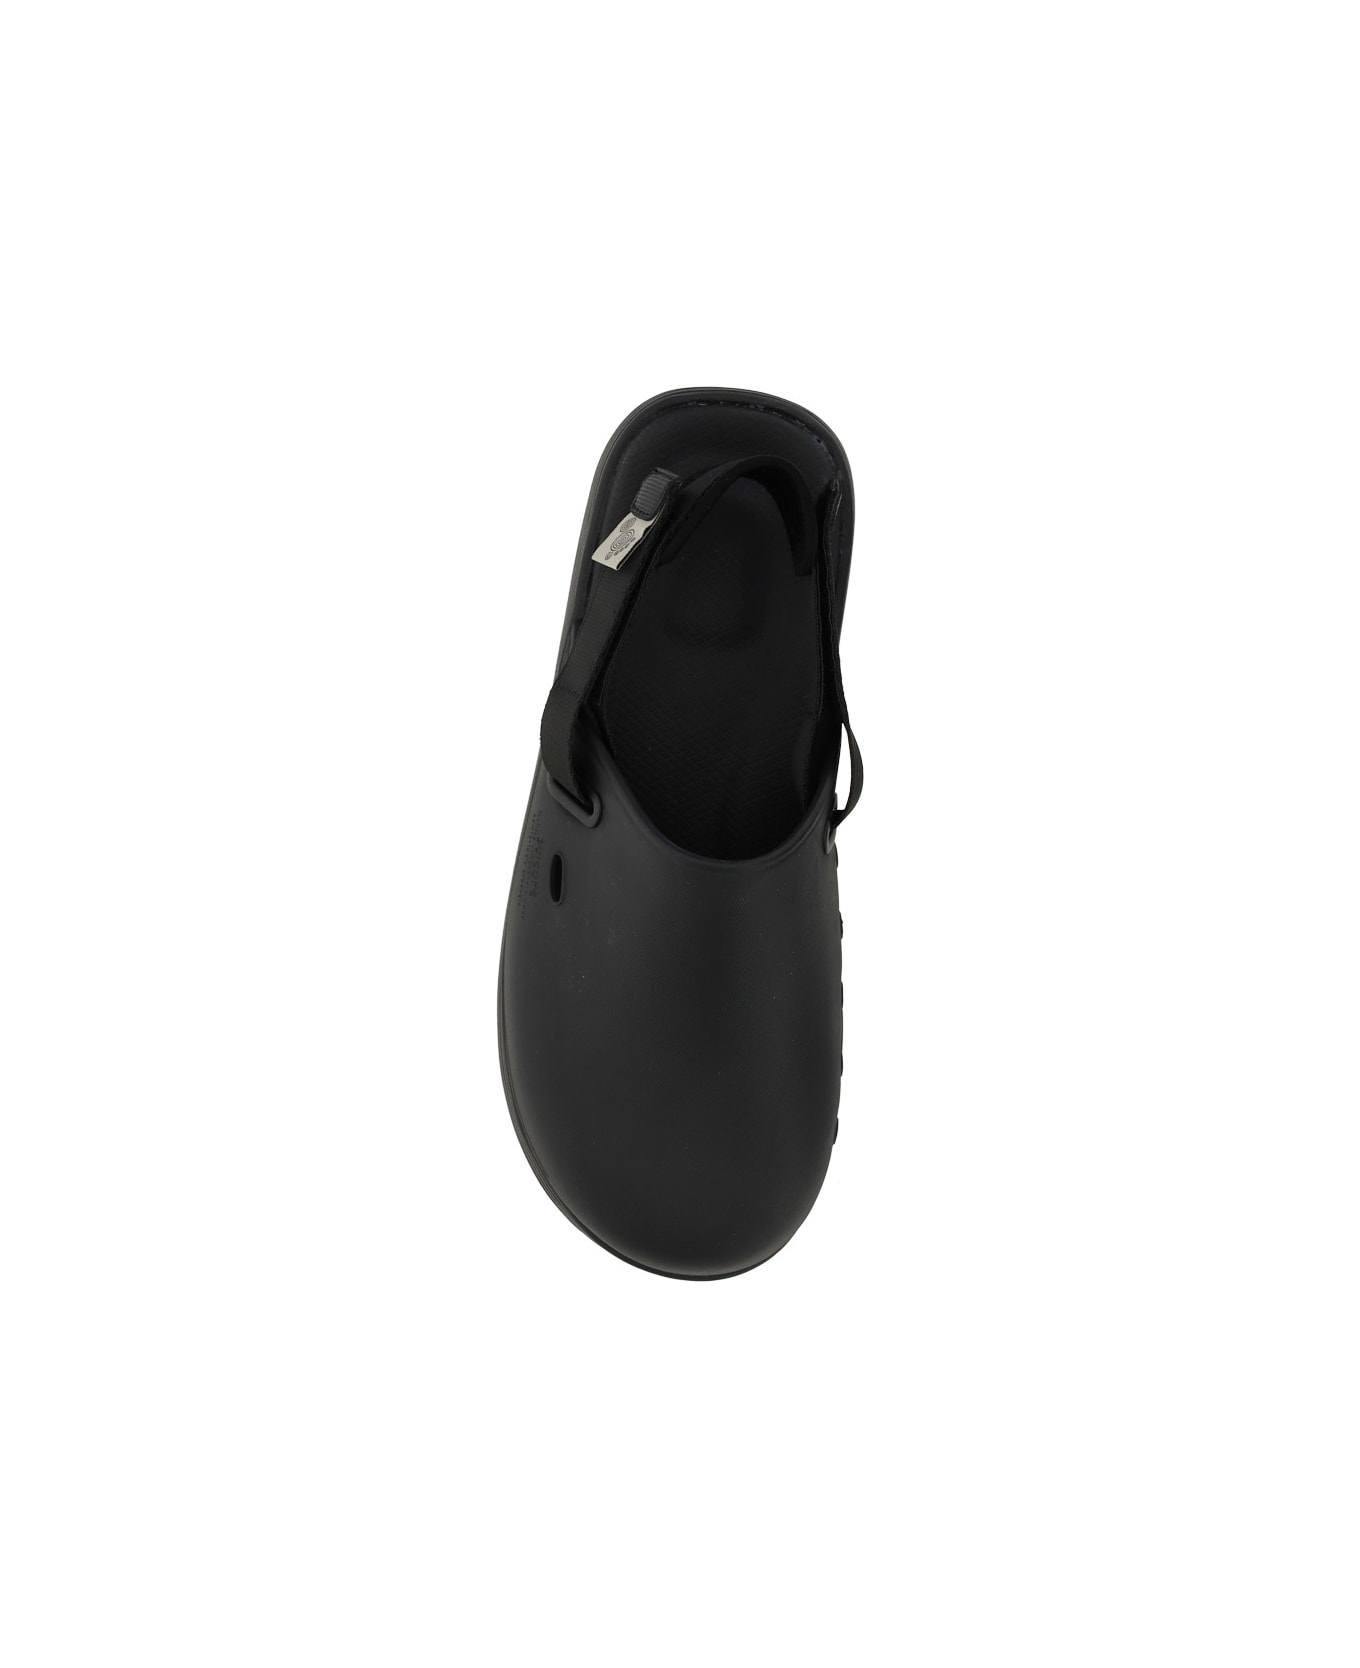 SUICOKE Cappo Sandals - Black フラットシューズ